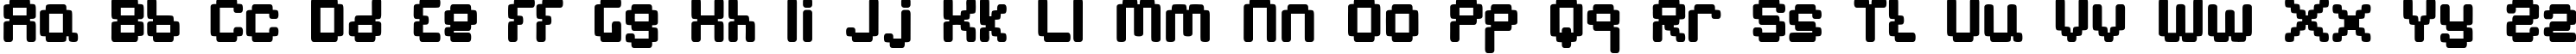 Пример написания английского алфавита шрифтом BN Emulator